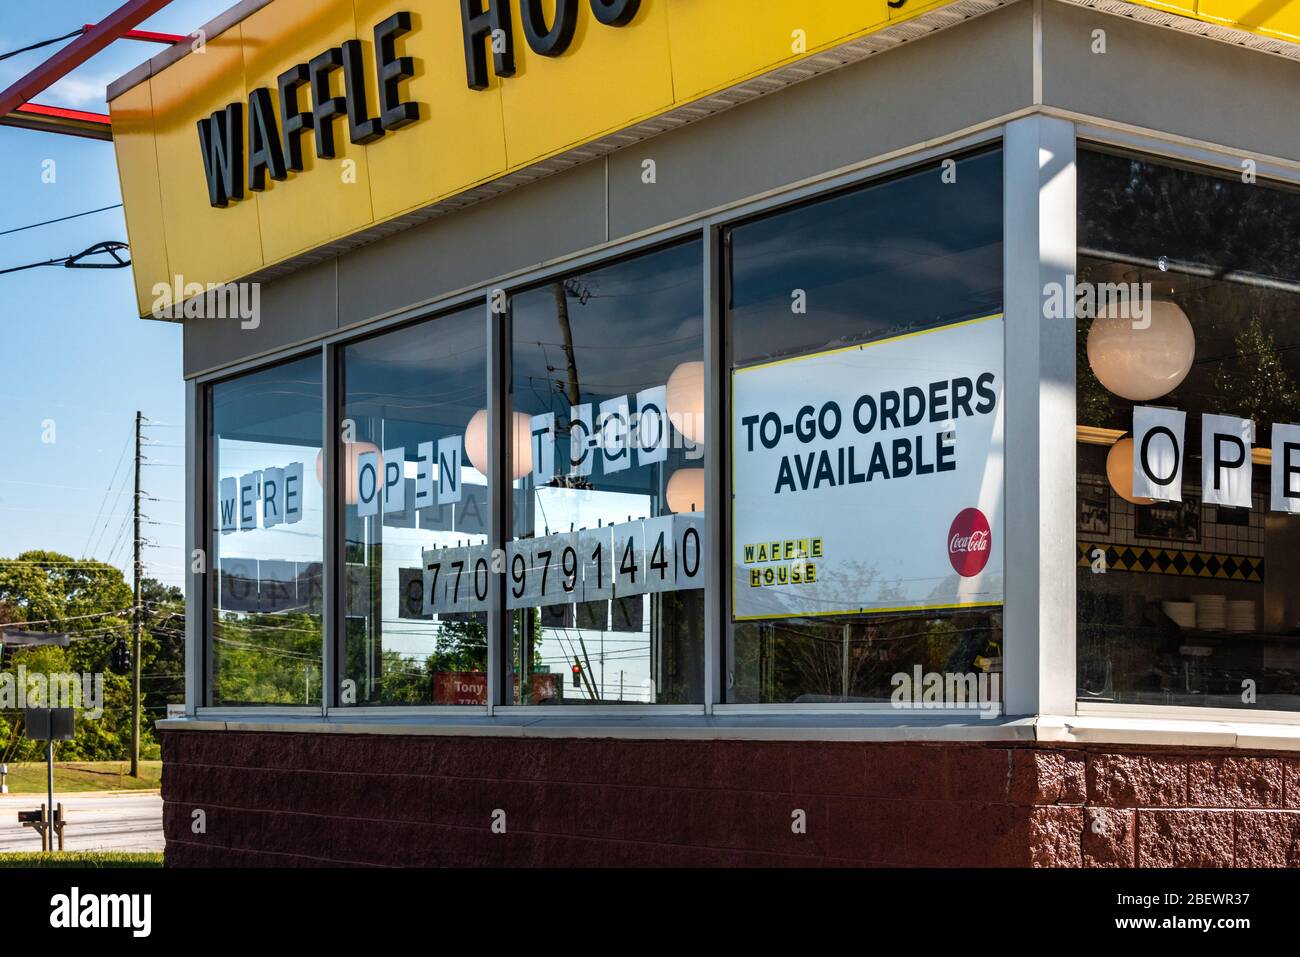 Waffle House Restaurant nur für To-Go Bestellungen während des Coronavirus Pandemie Ausbruch im Frühjahr 2020 geöffnet. (USA) Stockfoto